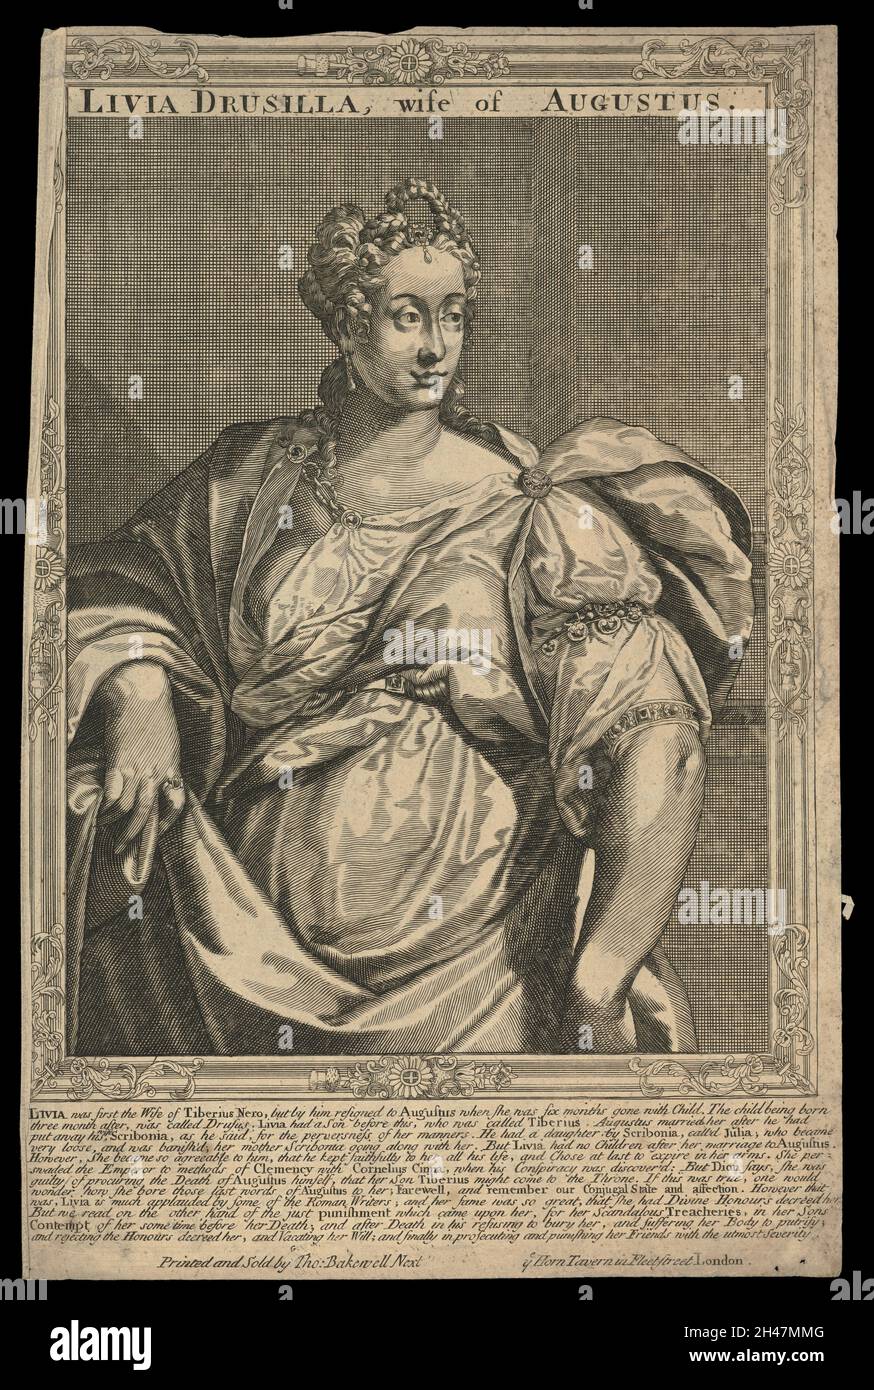 Livia Drusilla, moglie di Augusto Cesare. Incisione a filo, 16--, dopo A. Sadeler. Foto Stock